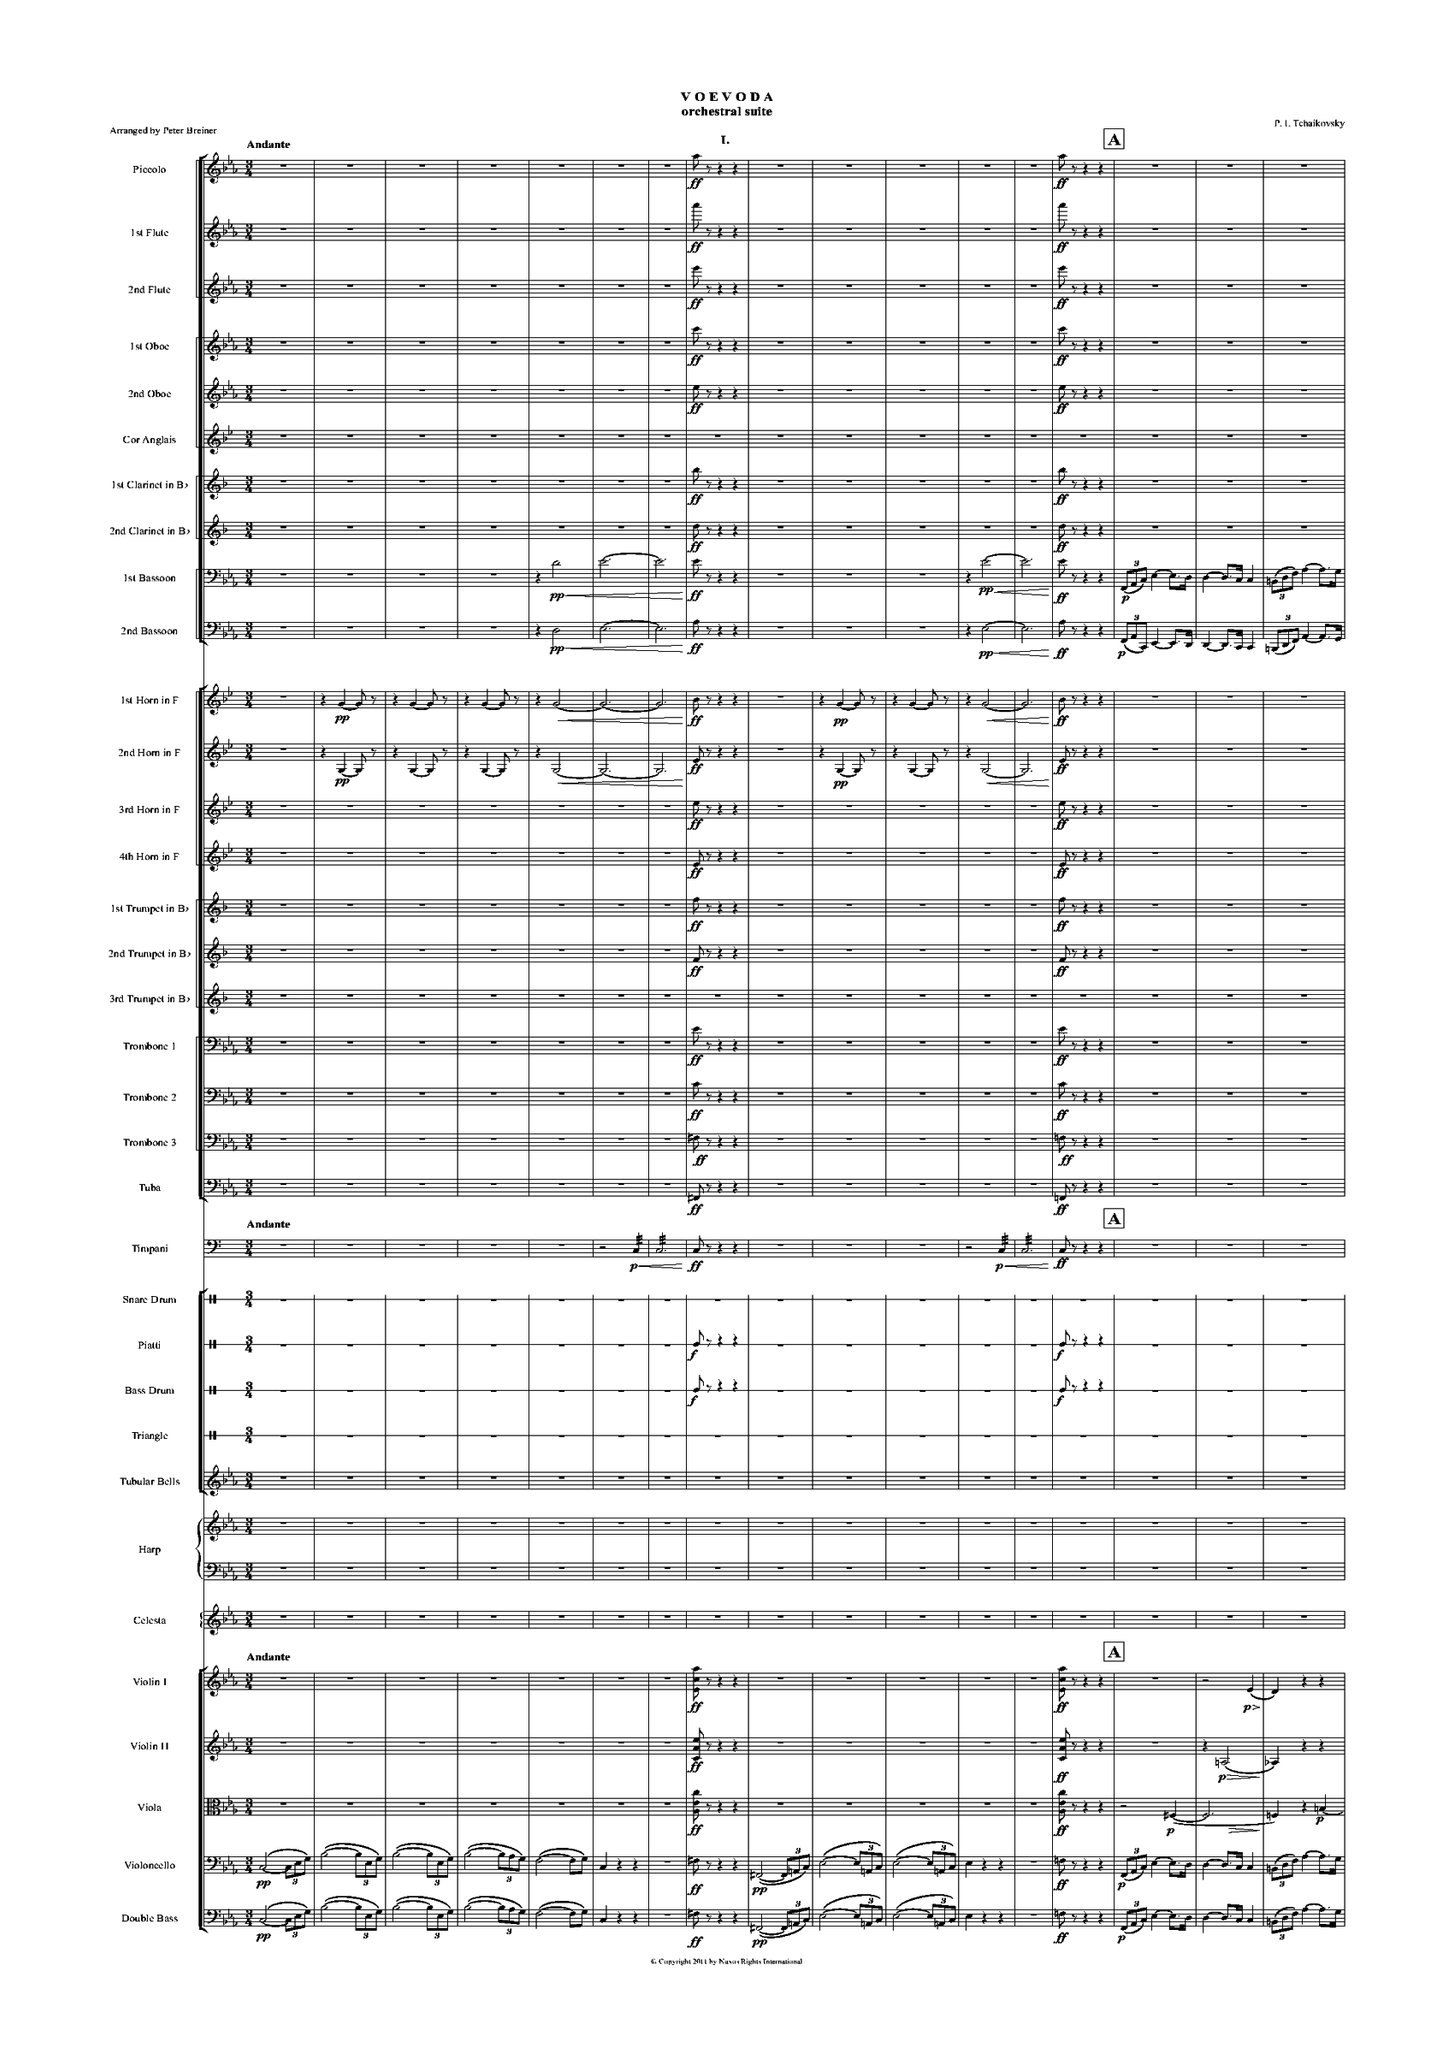 Pyotr Ilyich Tchaikovsky: The Voyevoda Suite – arranged by Peter Breiner (PB050)